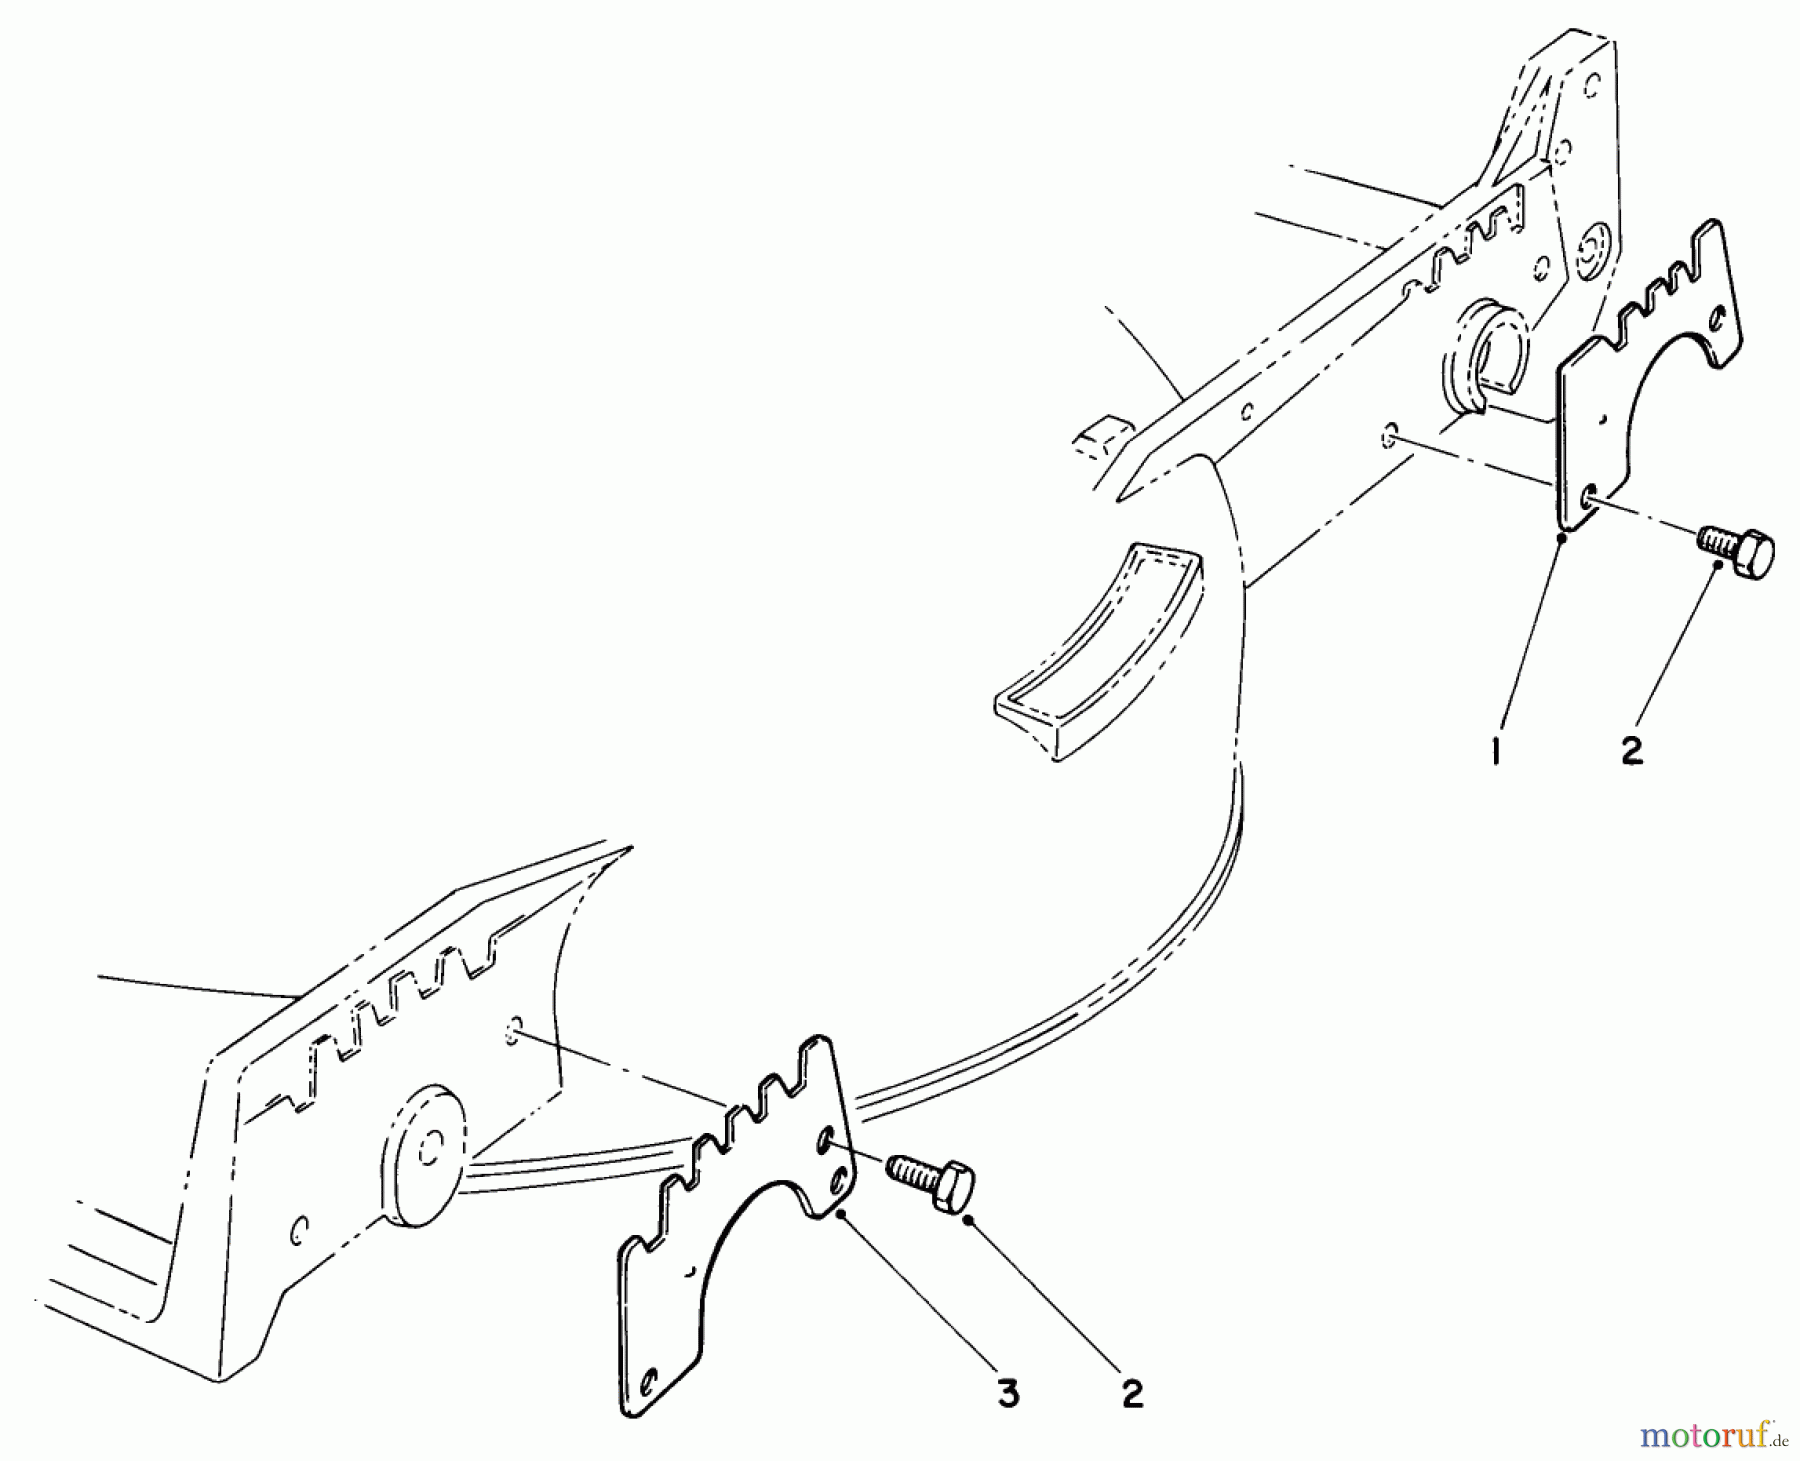  Toro Neu Mowers, Walk-Behind Seite 1 20705 - Toro Lawnmower, 1984 (4000001-4999999) WEAR PLATE KIT NO. 49-4080 (OPTIONAL)